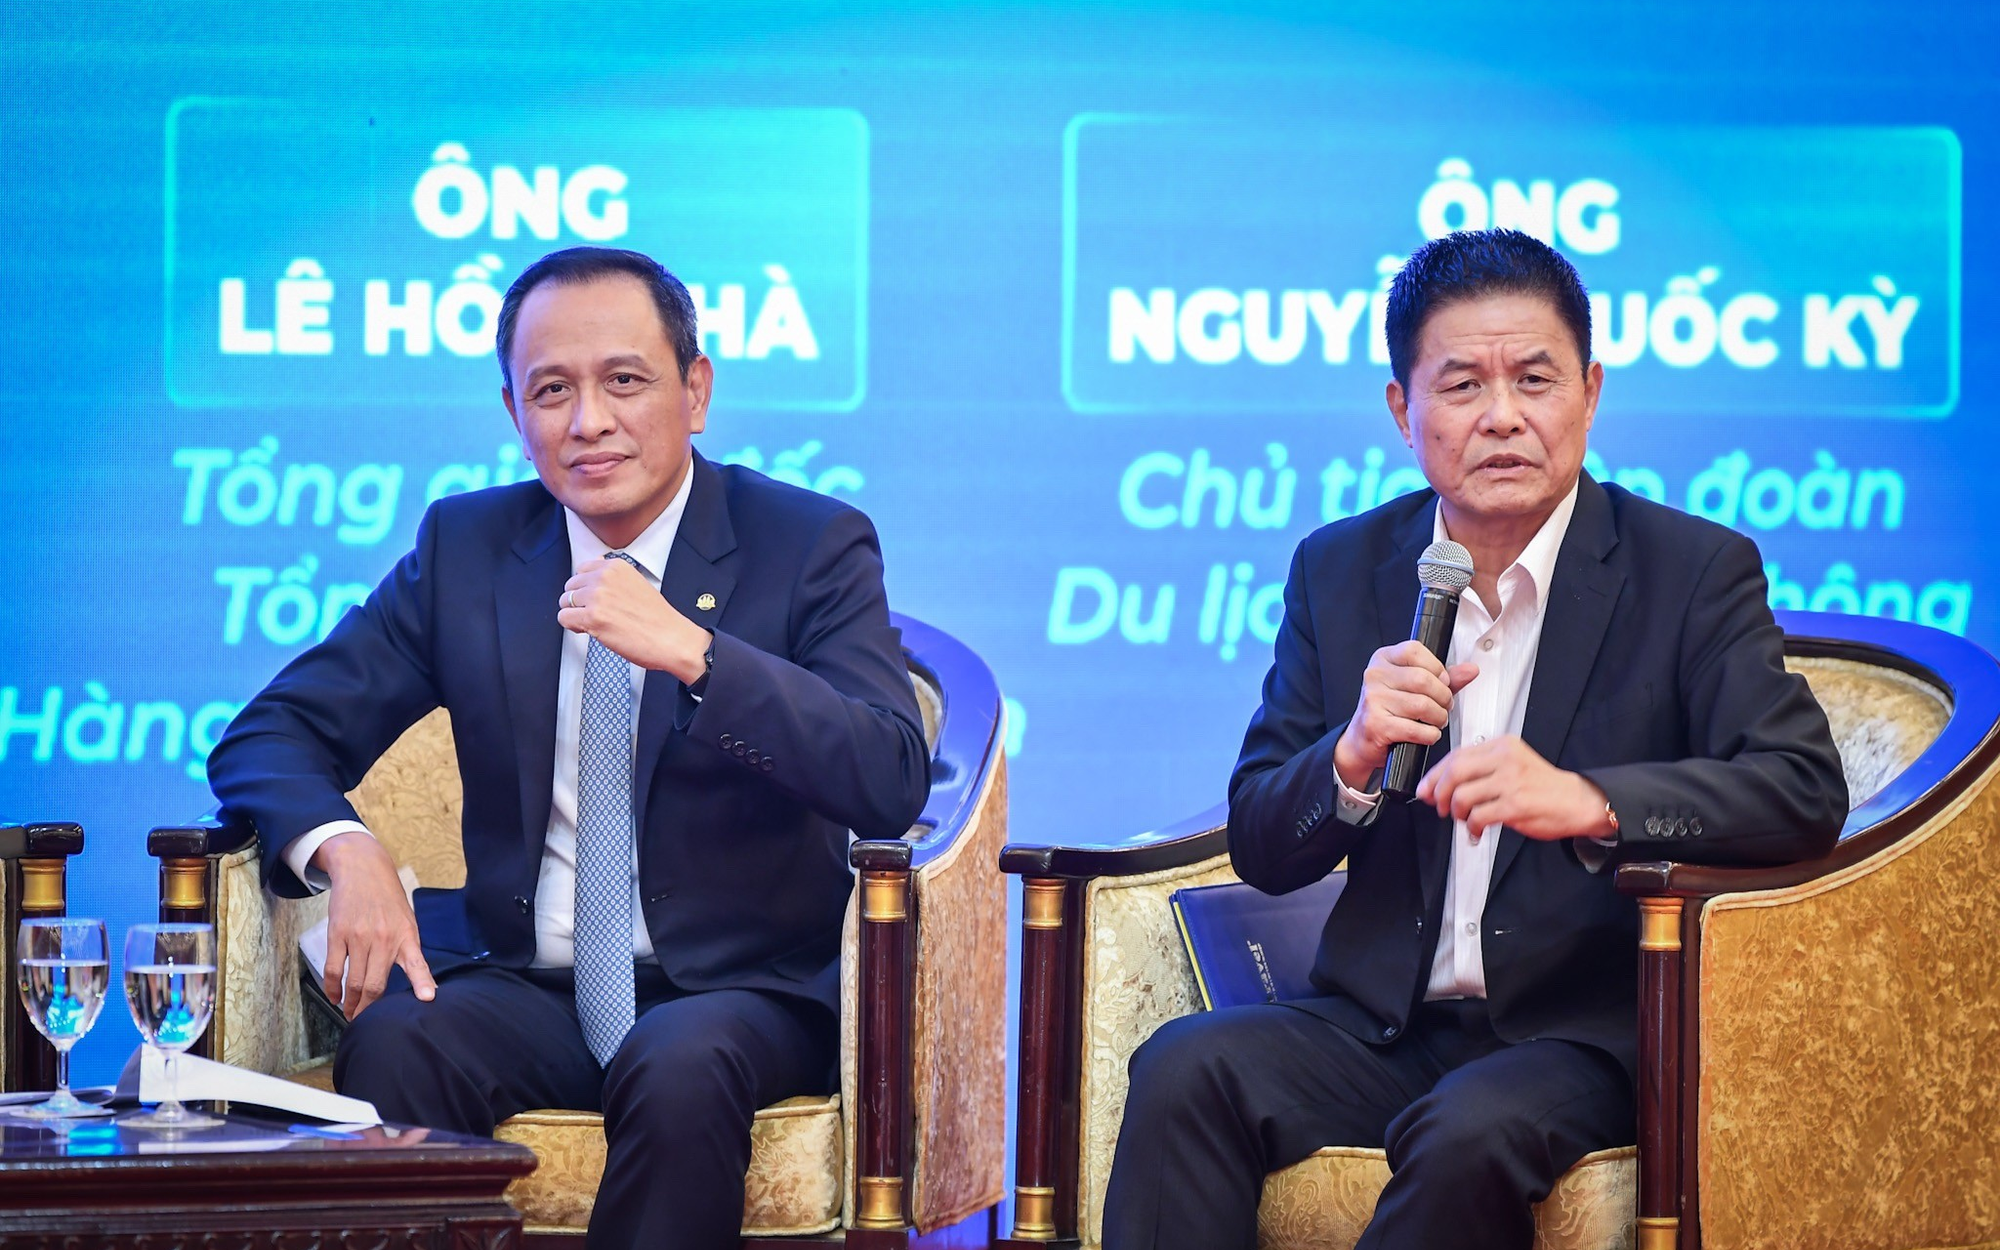 Ế khách, Vietnam Airlines phải hủy 10% chuyến bay đêm trong nỗ lực giảm giá vé, Chủ tịch Vietravel chua xót: “Đừng hủy diệt sinh lực của nhau”